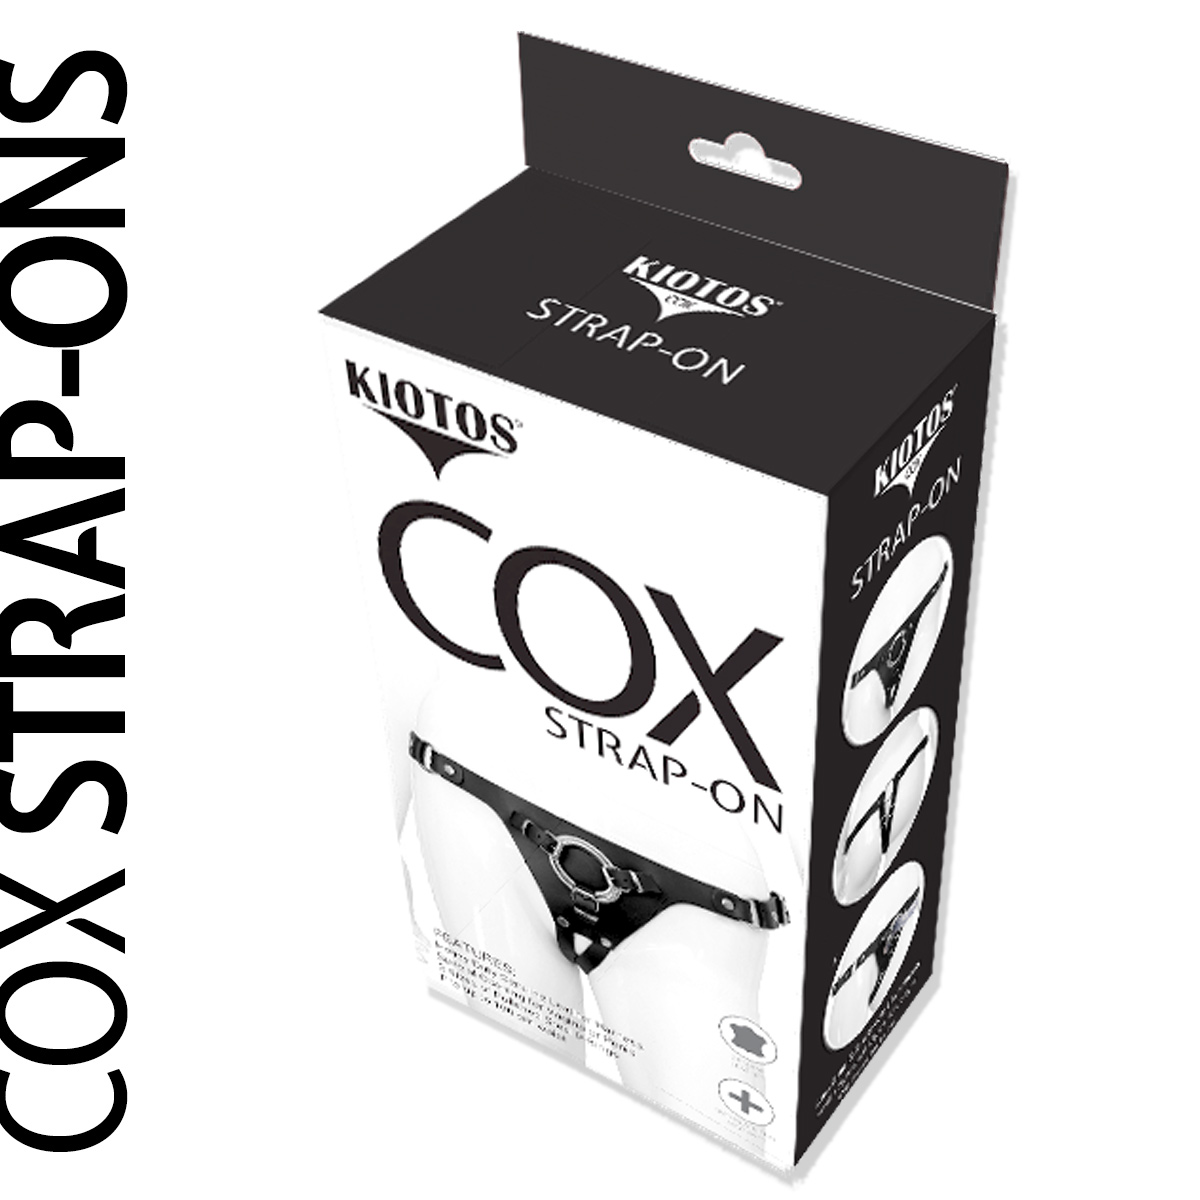 Kiotos-COX-Strap-On-Deluxe-OPR-307901-4